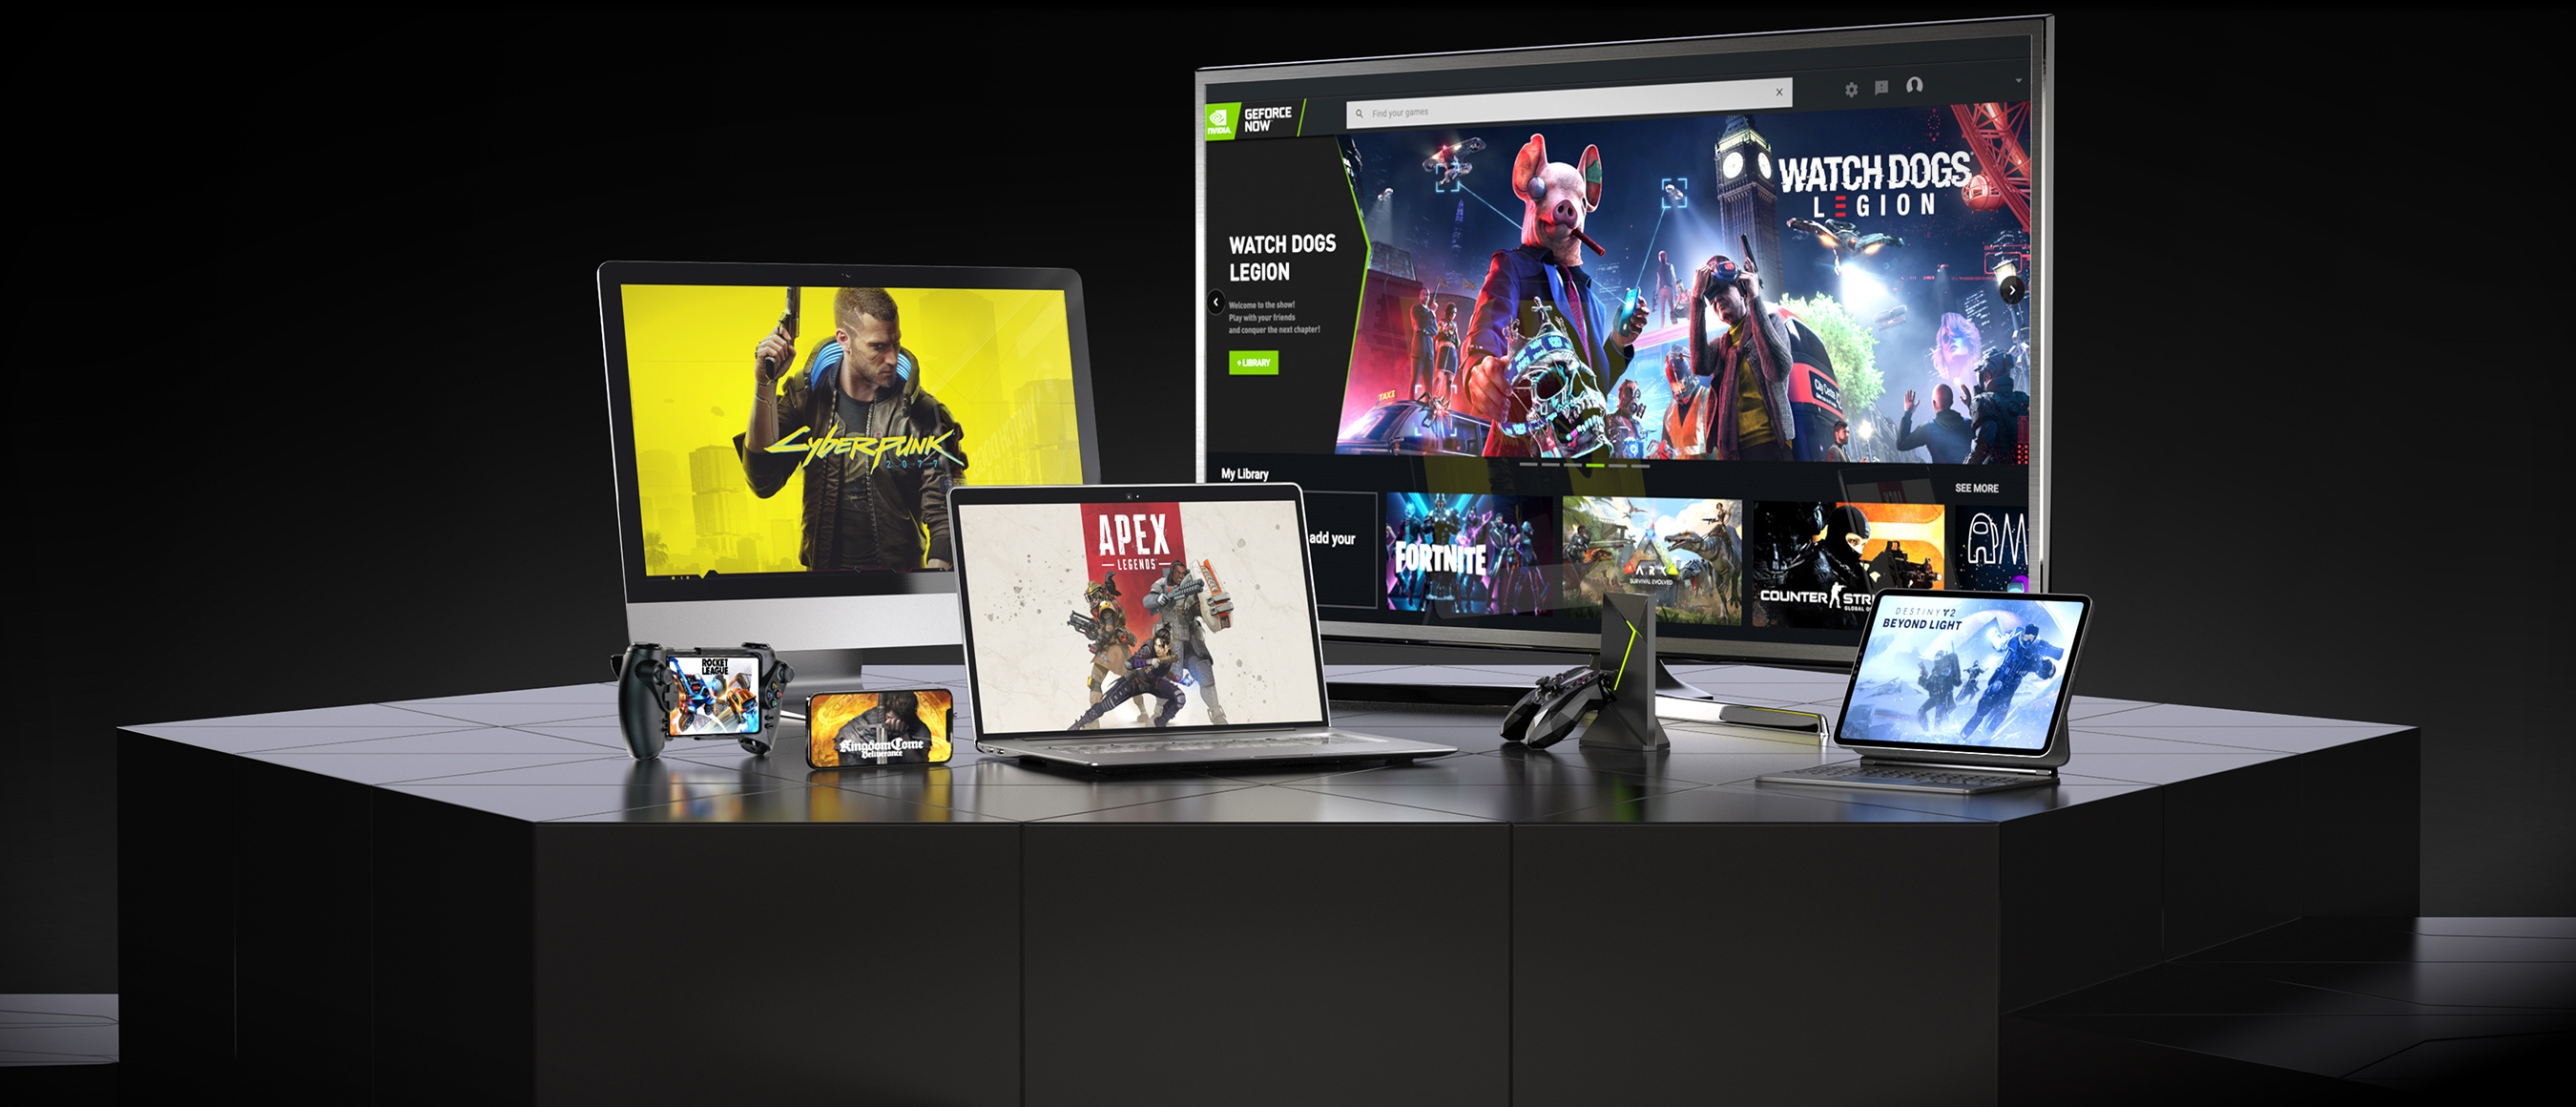 NVIDIA s'appuie sur AMD pour développer sa plateforme de cloud gaming